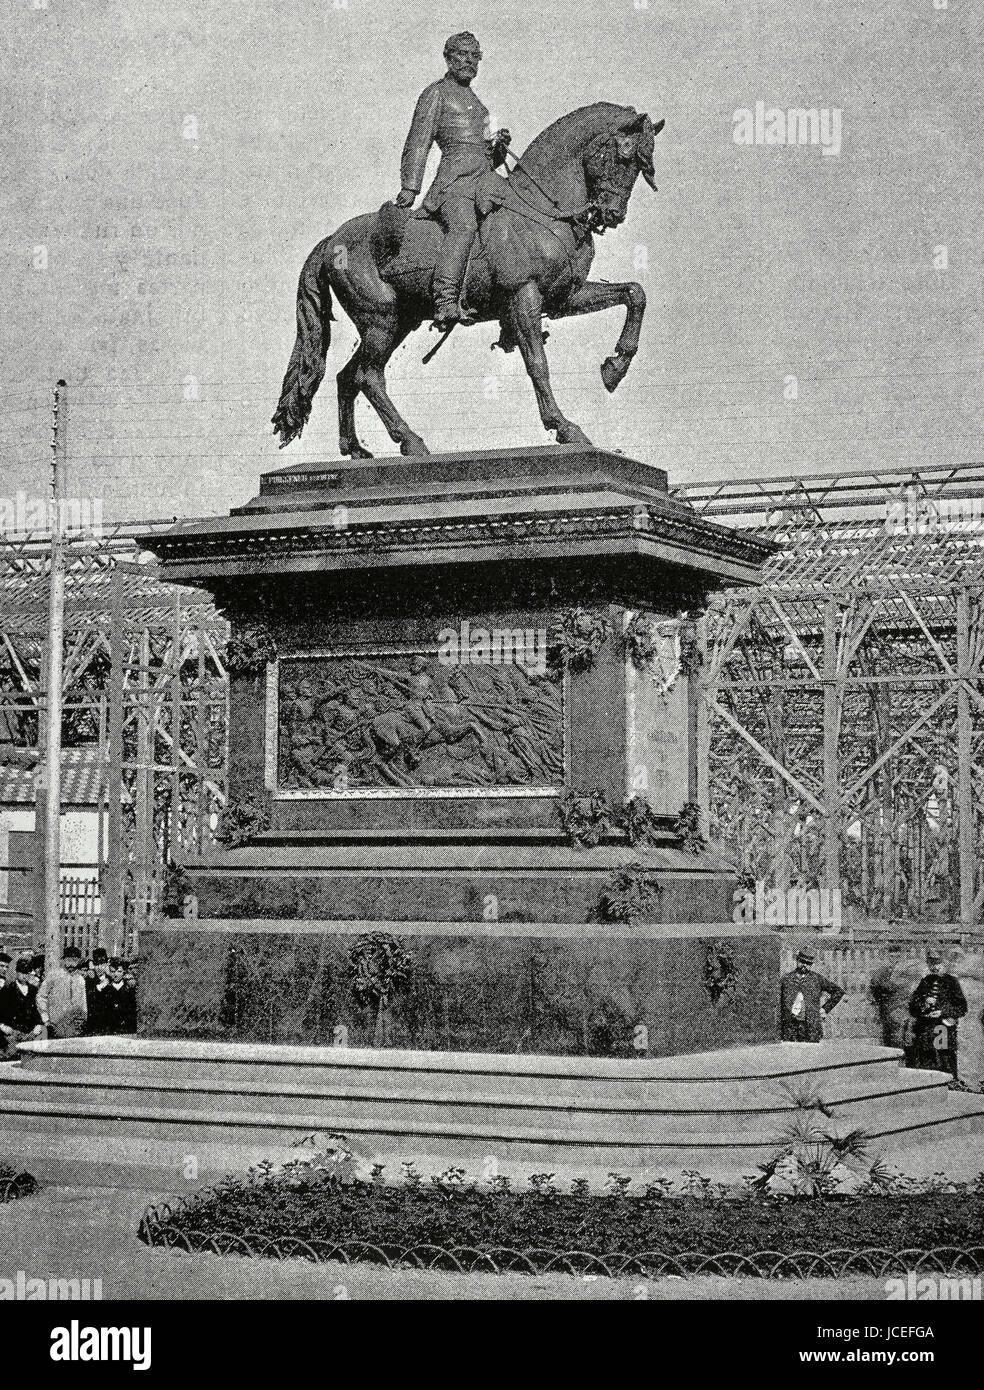 Juan Prim (1814-1870). Politico spagnolo e militari. Statua equestre nel parco della Cittadella, Barcellona, inaugurato nel 1887 e distrutta nel 1936. Foto Stock